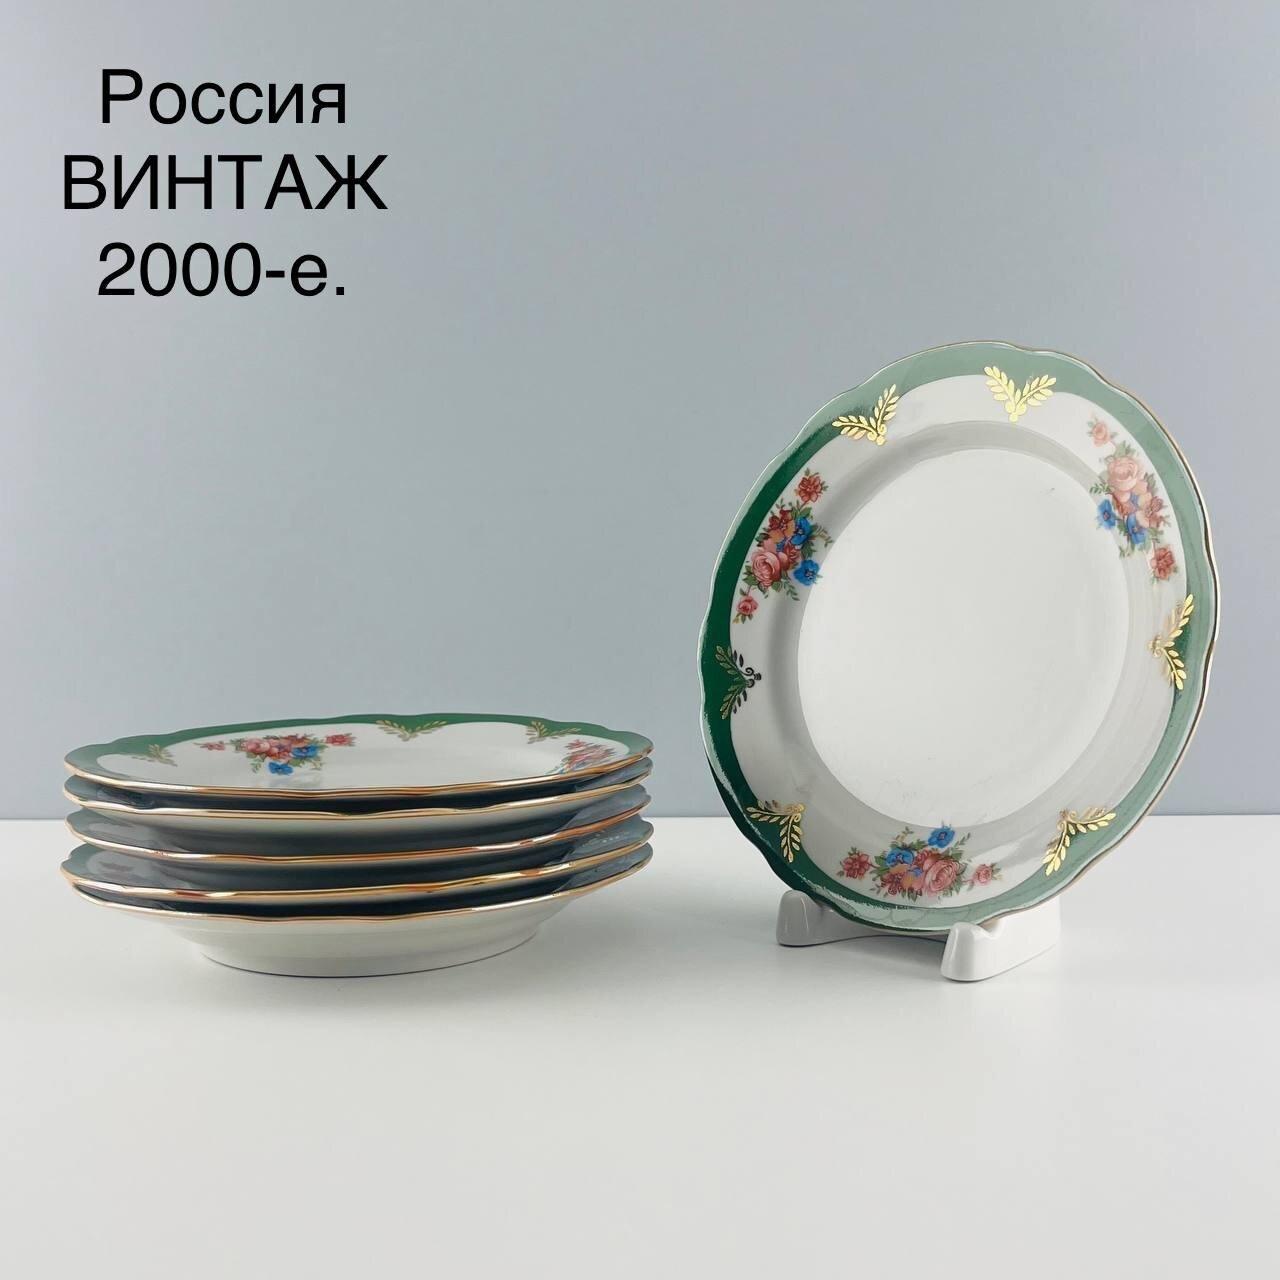 Винтажный набор пирожковых тарелок "Воспоминание". Фарфор Дулево. Россия, 2000-е.